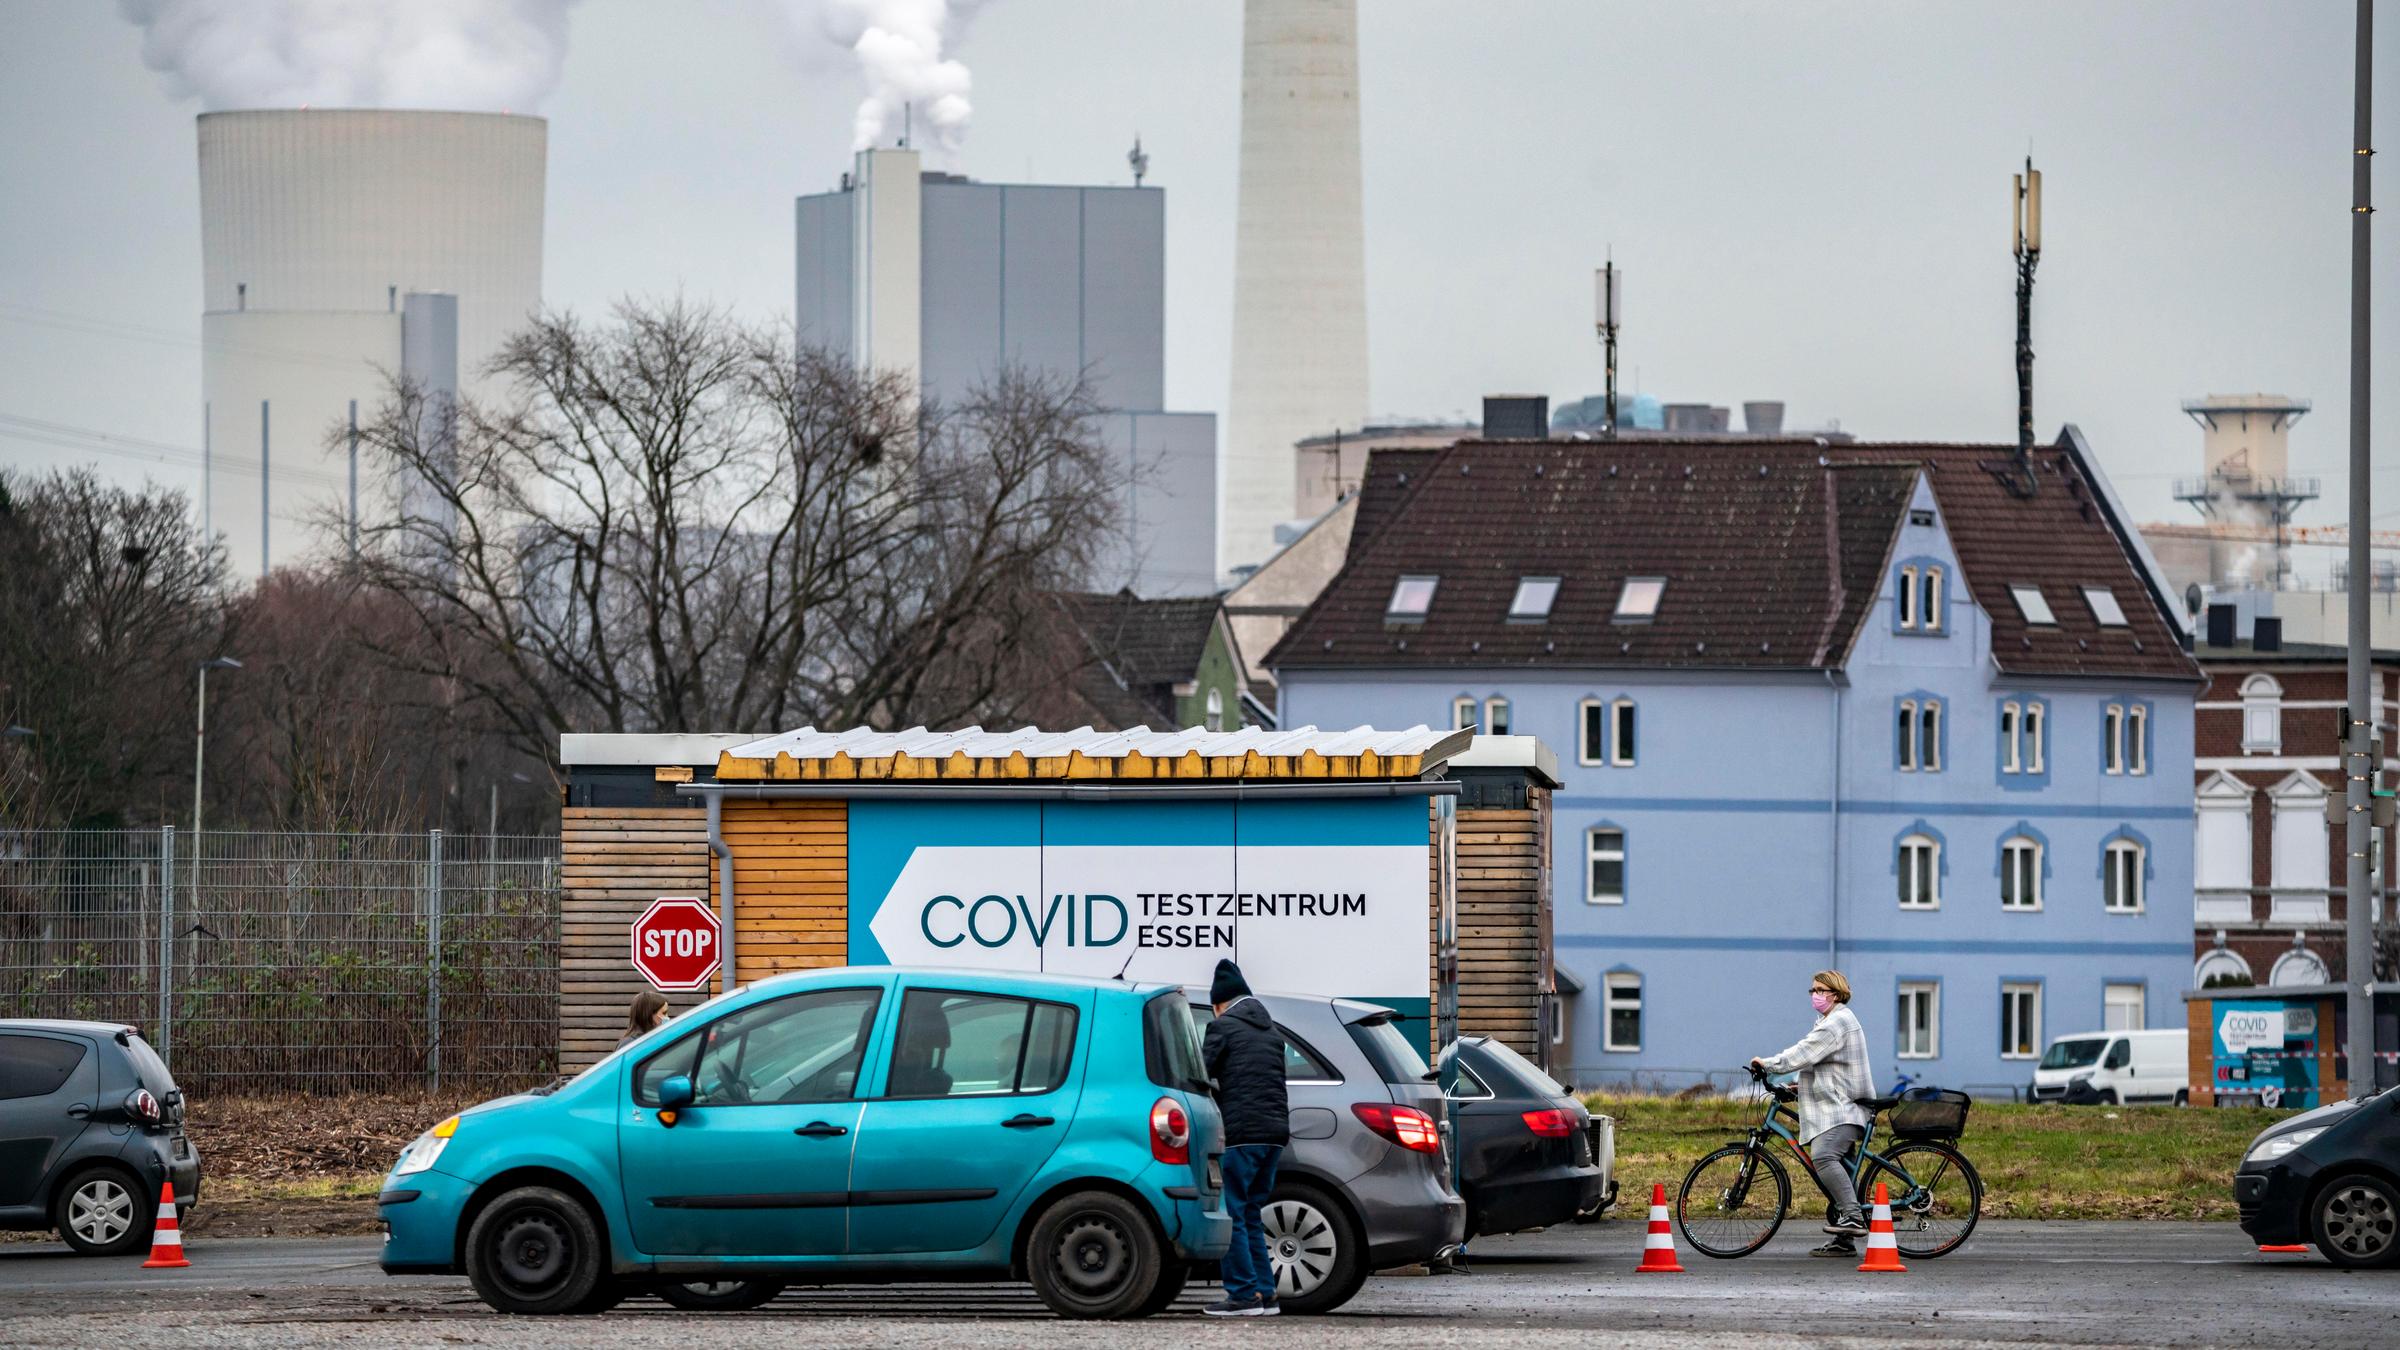 Corona-Drive-In-Testzentrum im Ruhrgebiet: Im Vordergrund sind Autos und ein Hinweisschild auf das Testzentrum zu sehen, im Hintergrund rauchen Kraftwerk-Schlote.